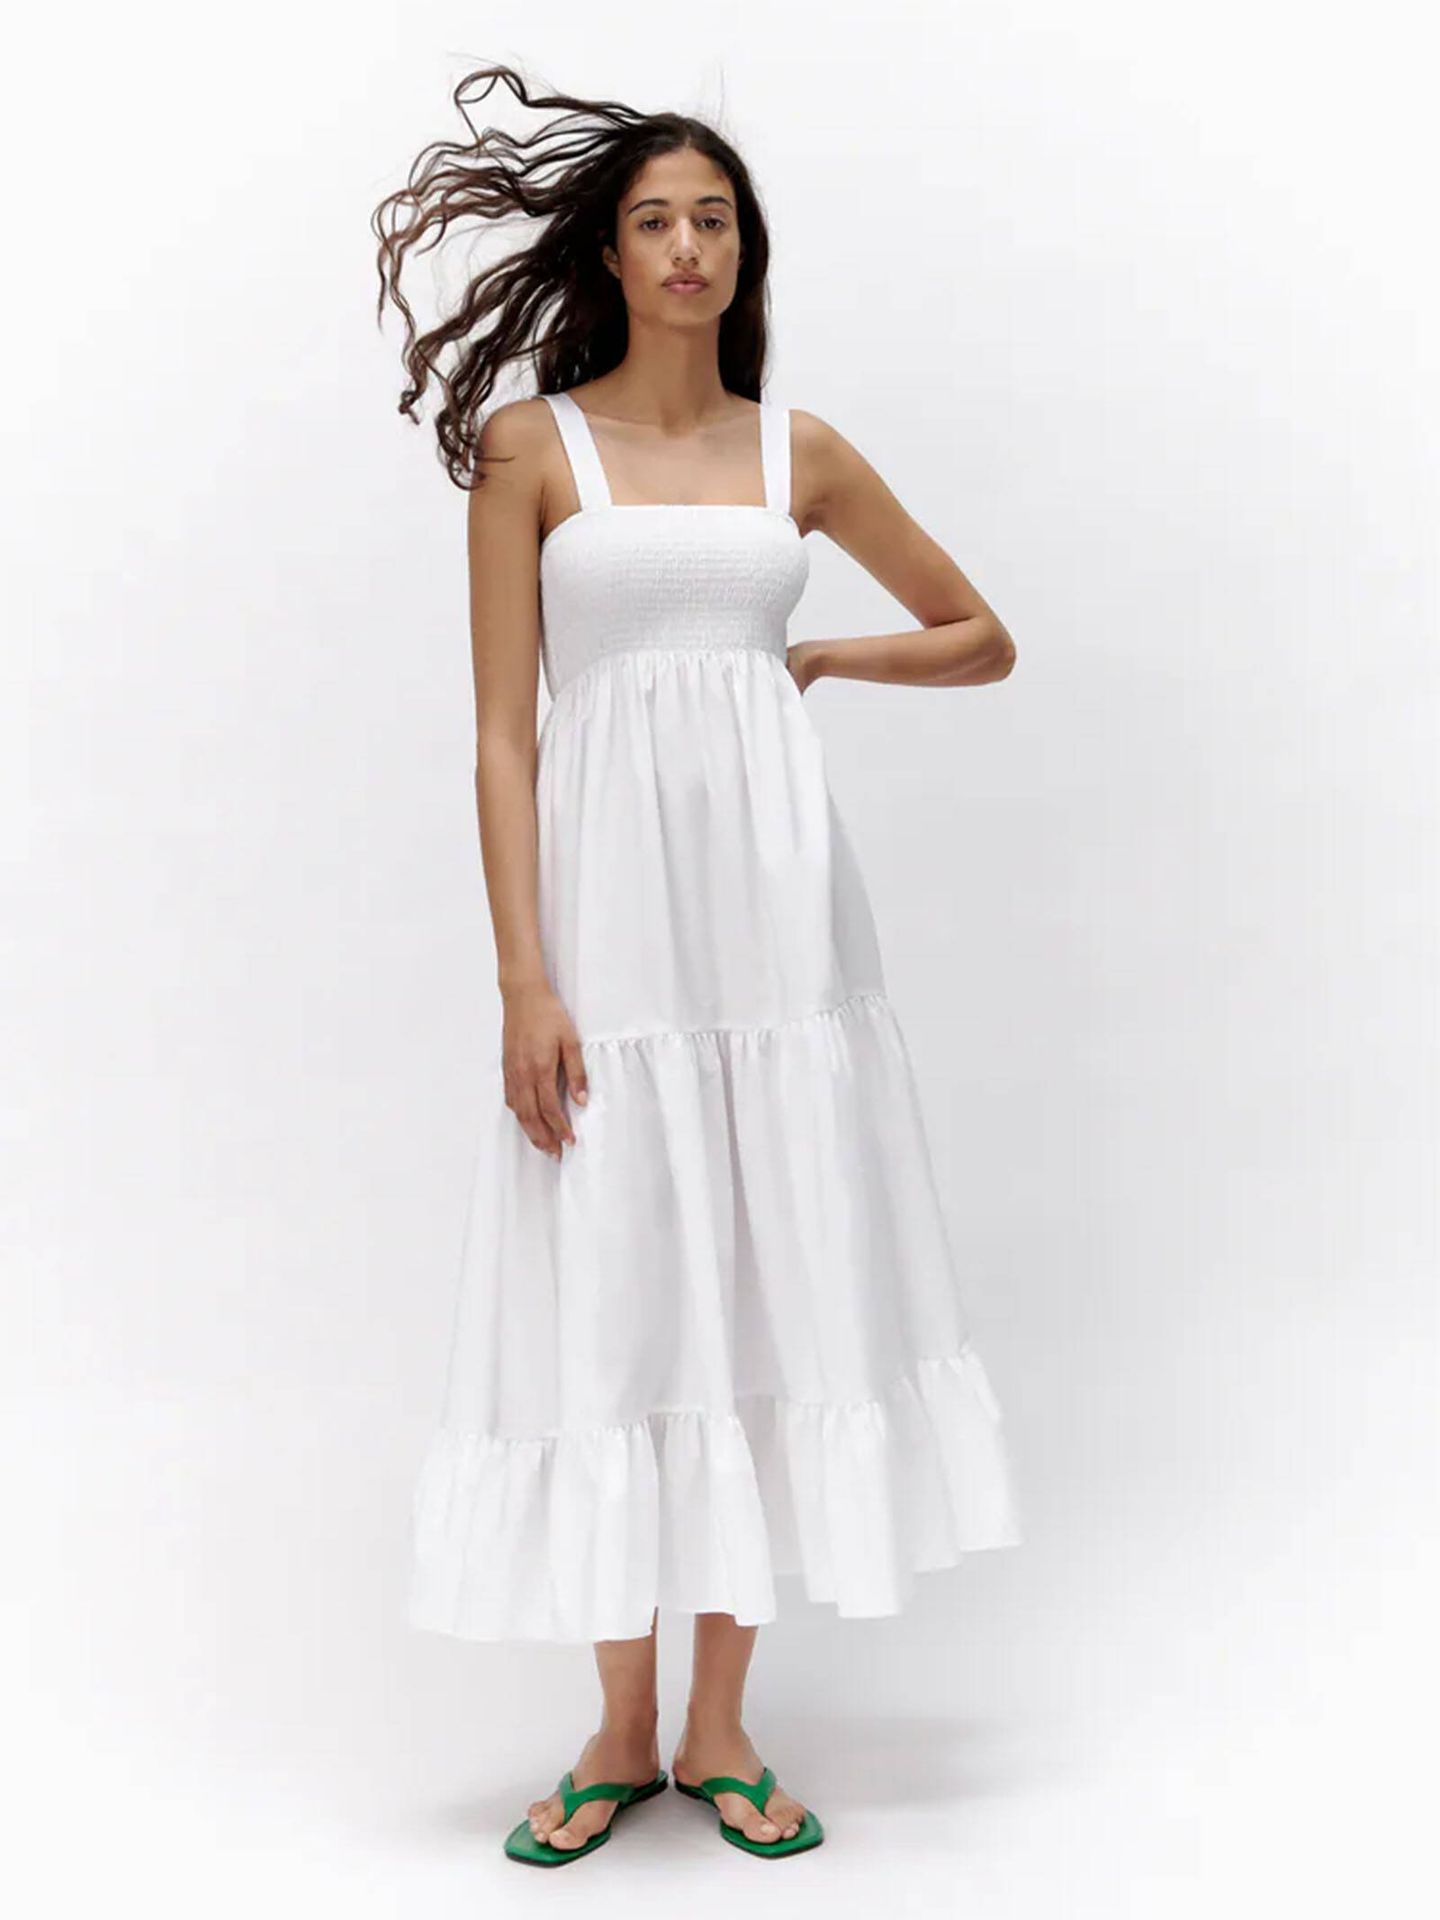 Vestido blanco para ser una novia 'made in Zara'. (Cortesía)